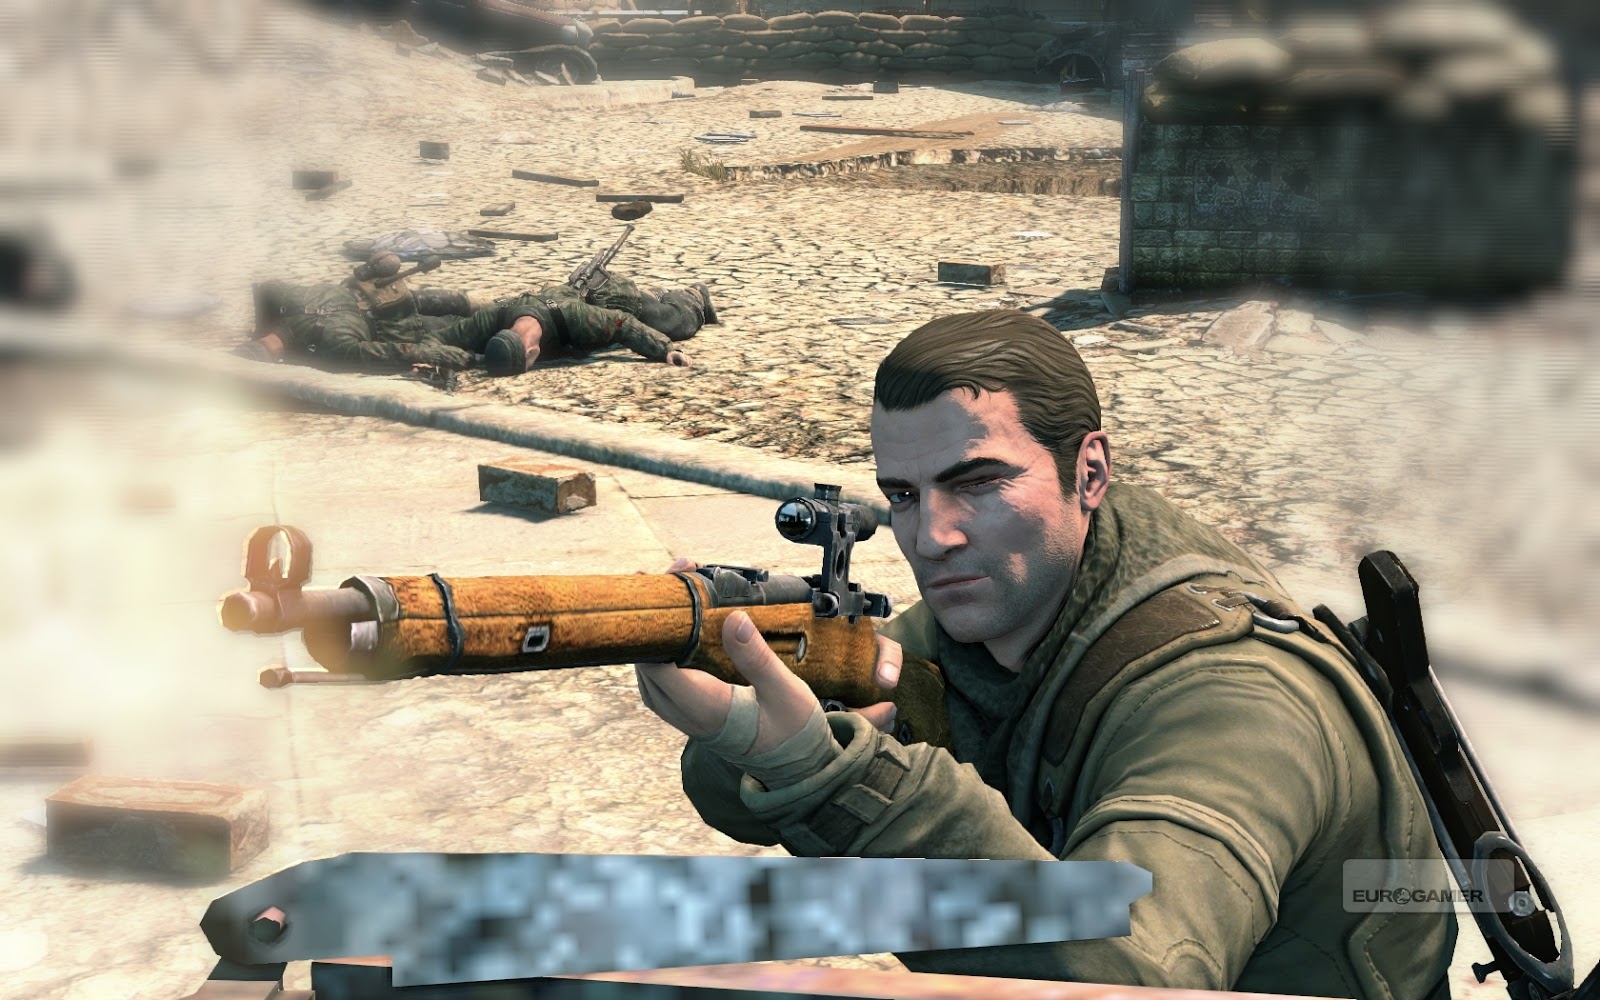 Sniper Elite 4 on Steam